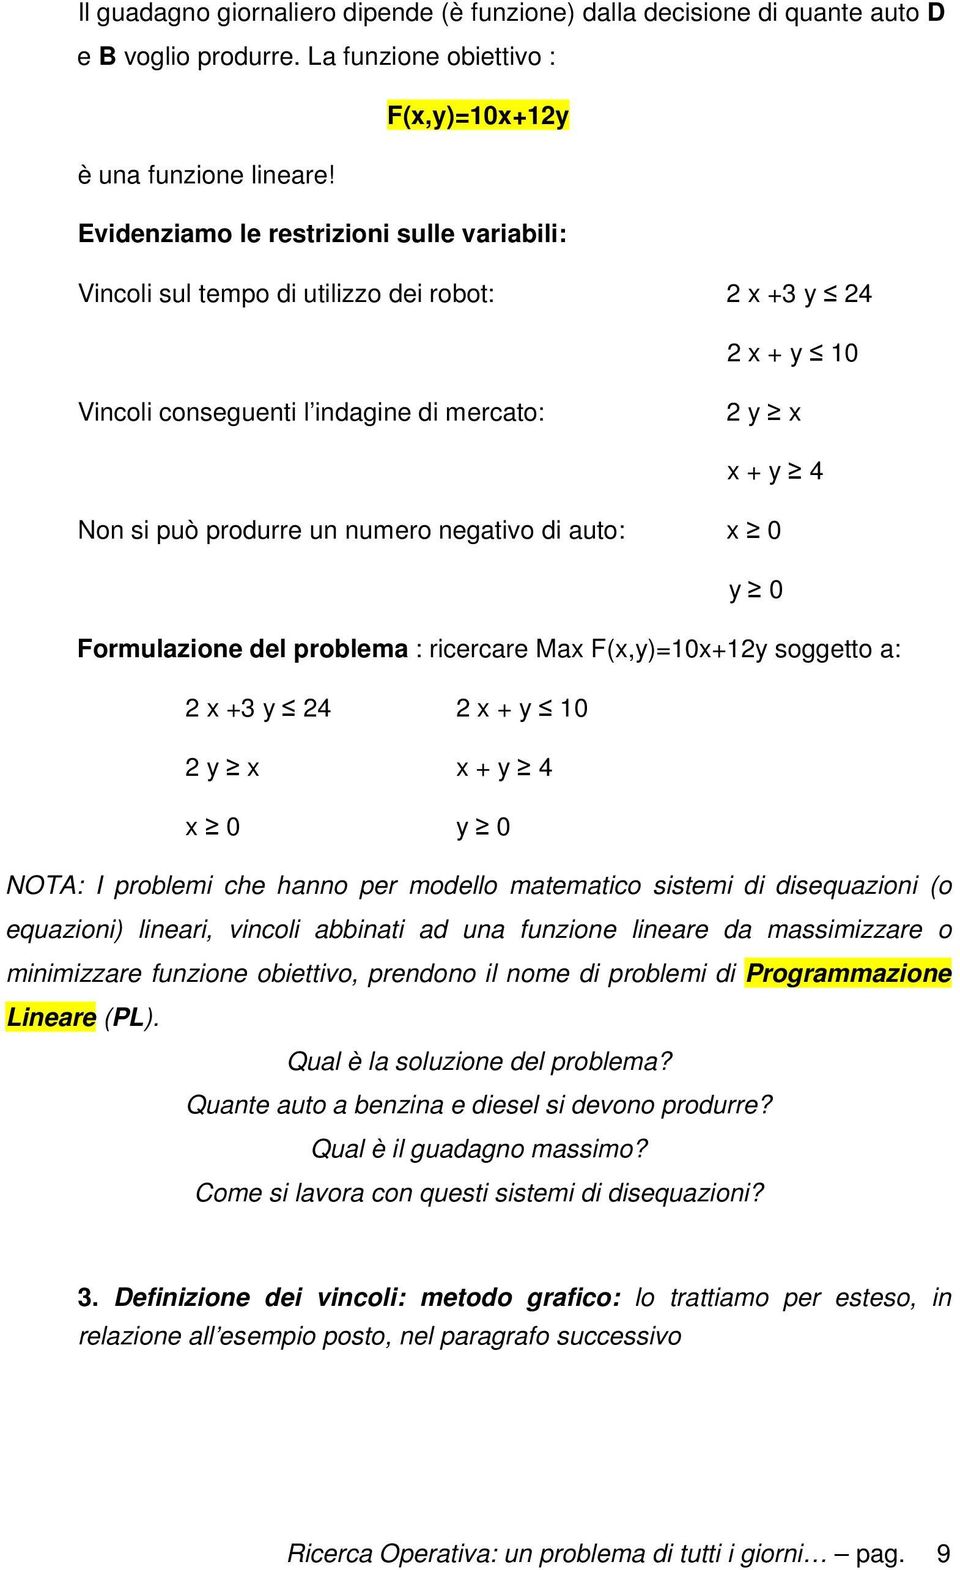 negativo di auto: x 0 y 0 Formulazione del problema : ricercare Max F(x,y)=10x+12y soggetto a: 2 x +3 y 24 2 x + y 10 2 y x x + y 4 x 0 y 0 NOTA: I problemi che hanno per modello matematico sistemi